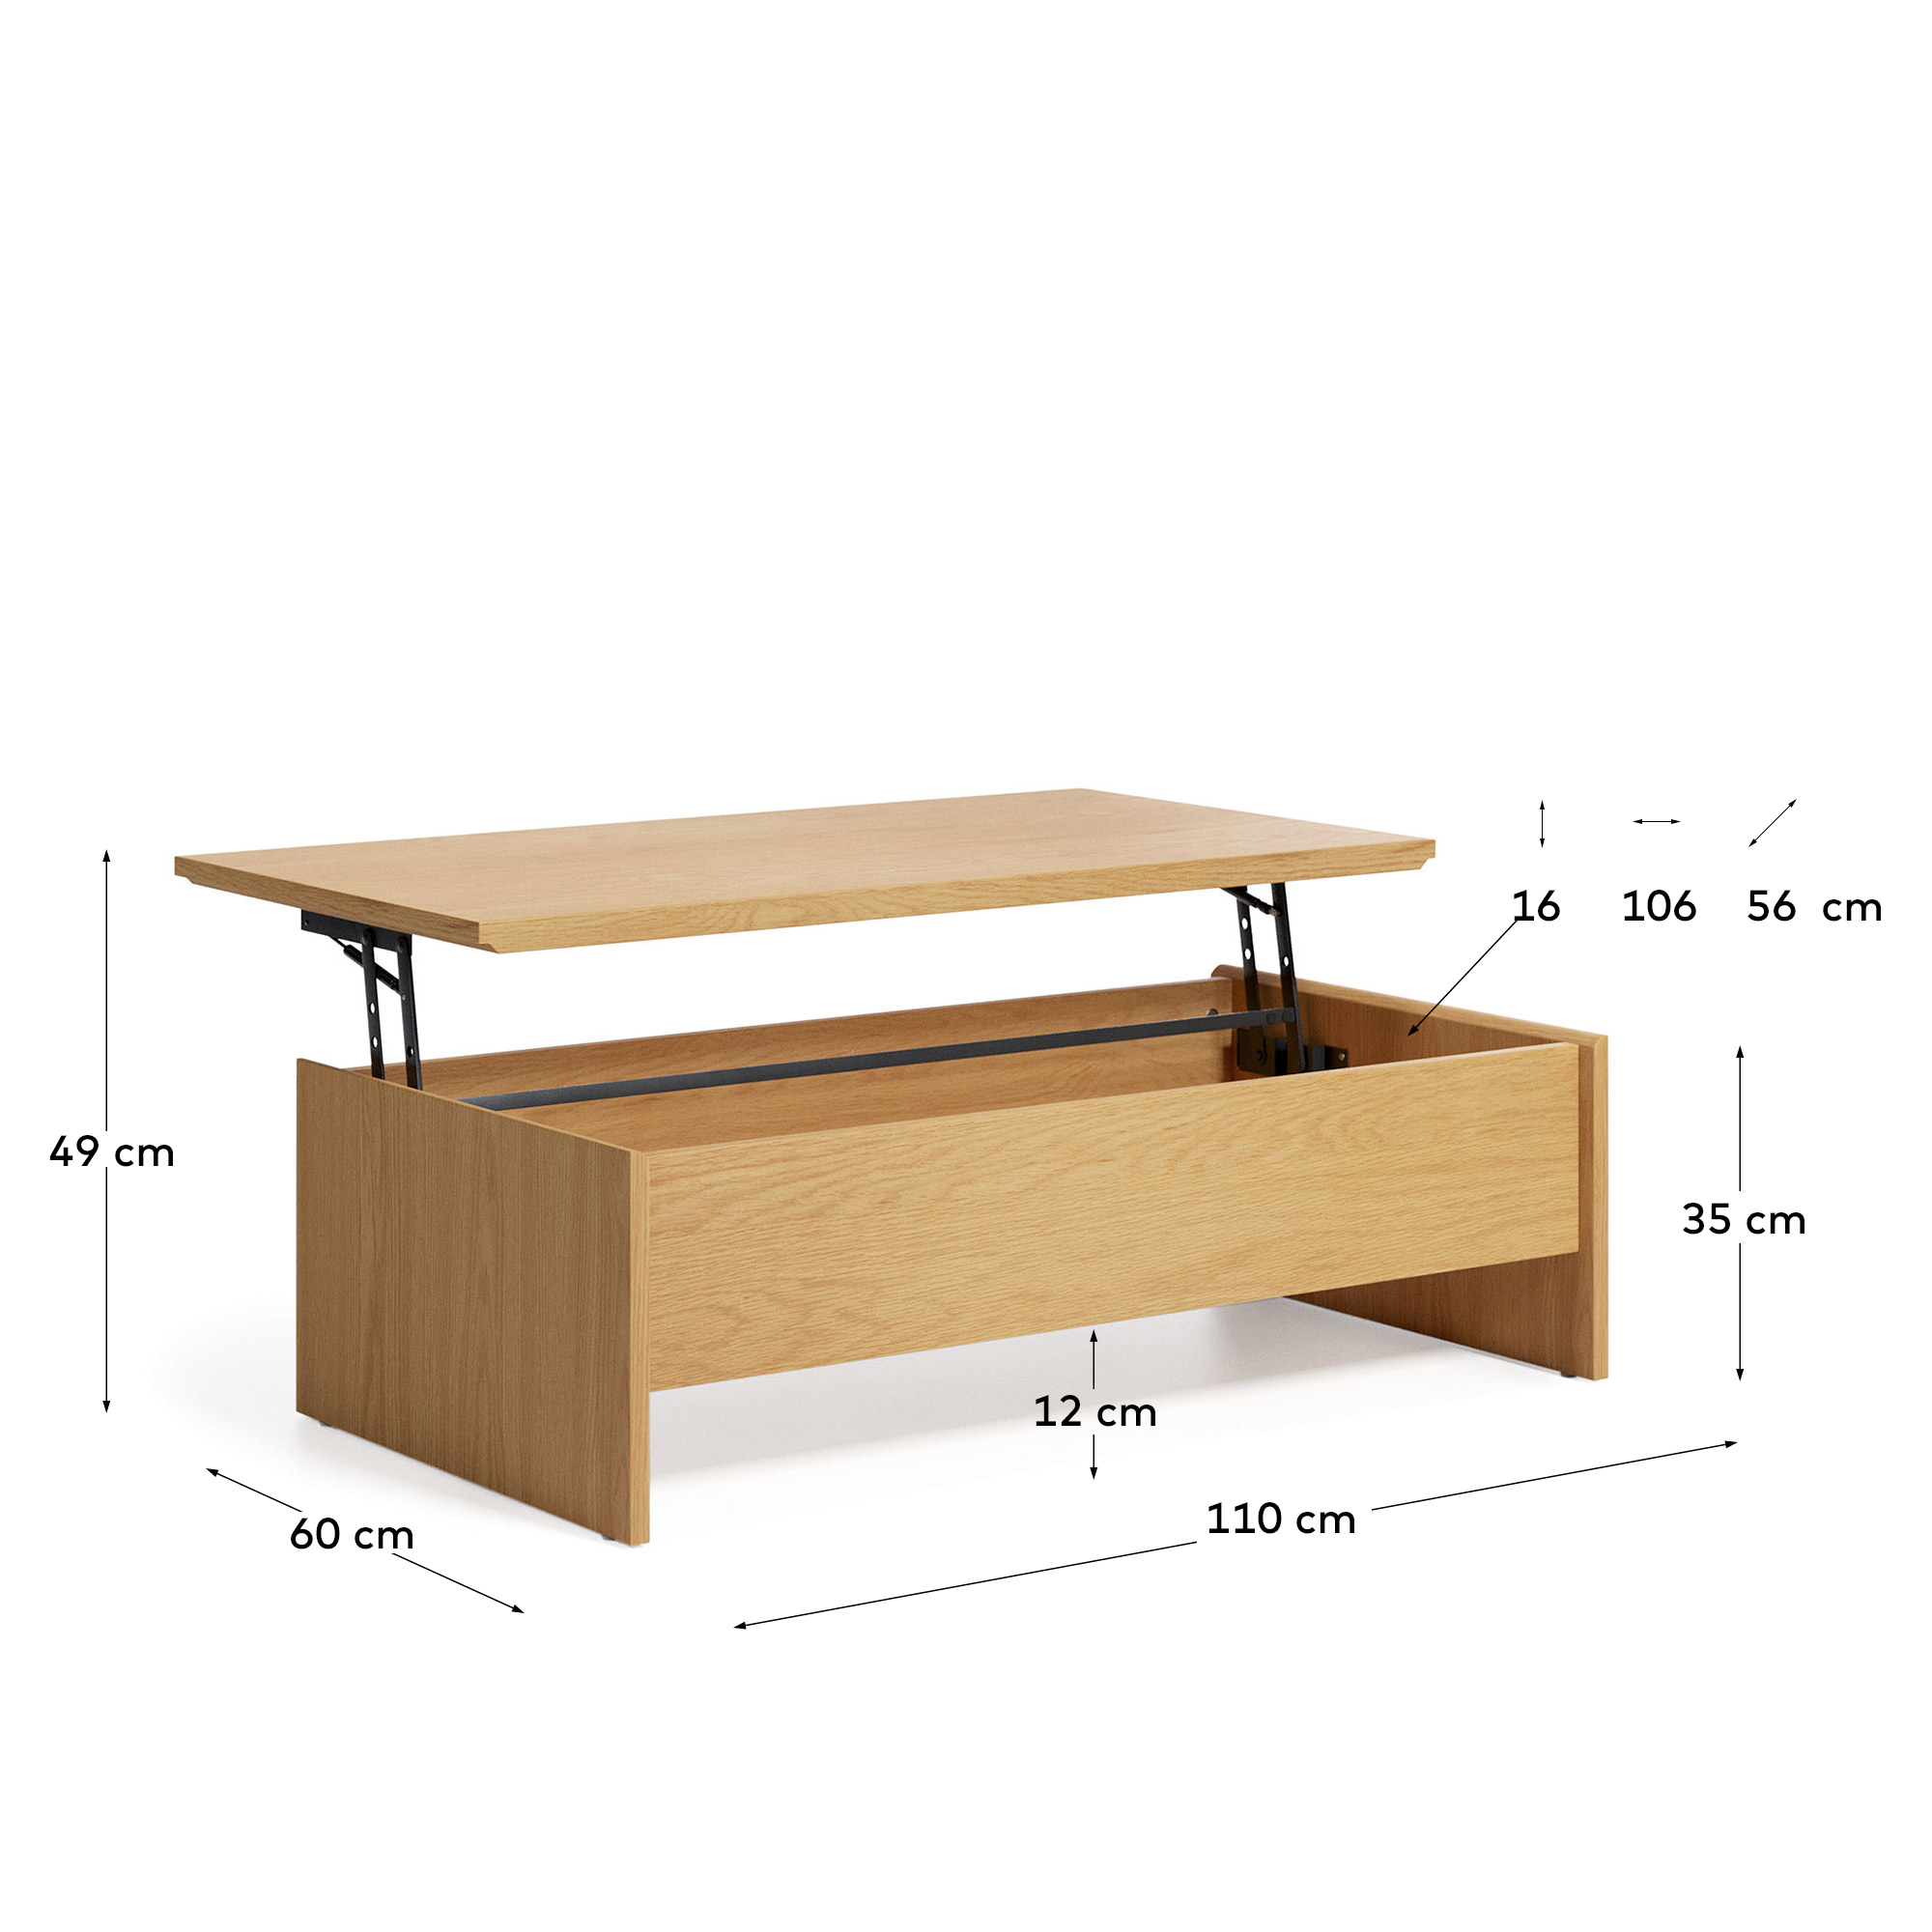 Кофейный столик трансформер La Forma Abilen шпон дуба 110 x 60 162678